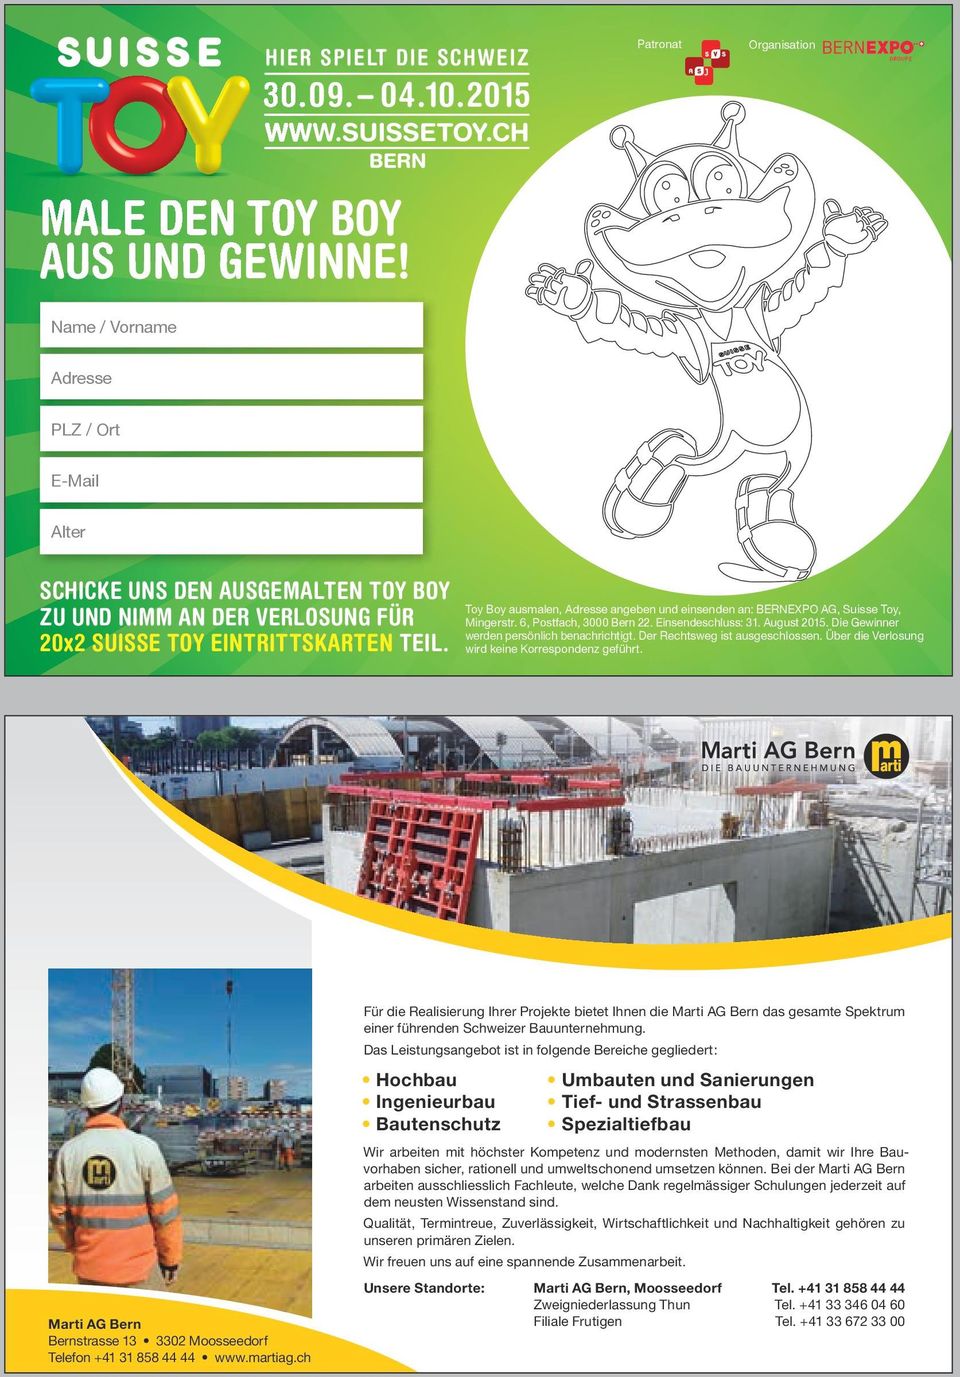 Toy Boy ausmalen, Adresse angeben und einsenden an: BERNEXPO AG, Suisse Toy, Mingerstr. 6, Postfach, 3000 Bern 22. Einsendeschluss: 31. August 2015. Die Gewinner werden persönlich benachrichtigt.